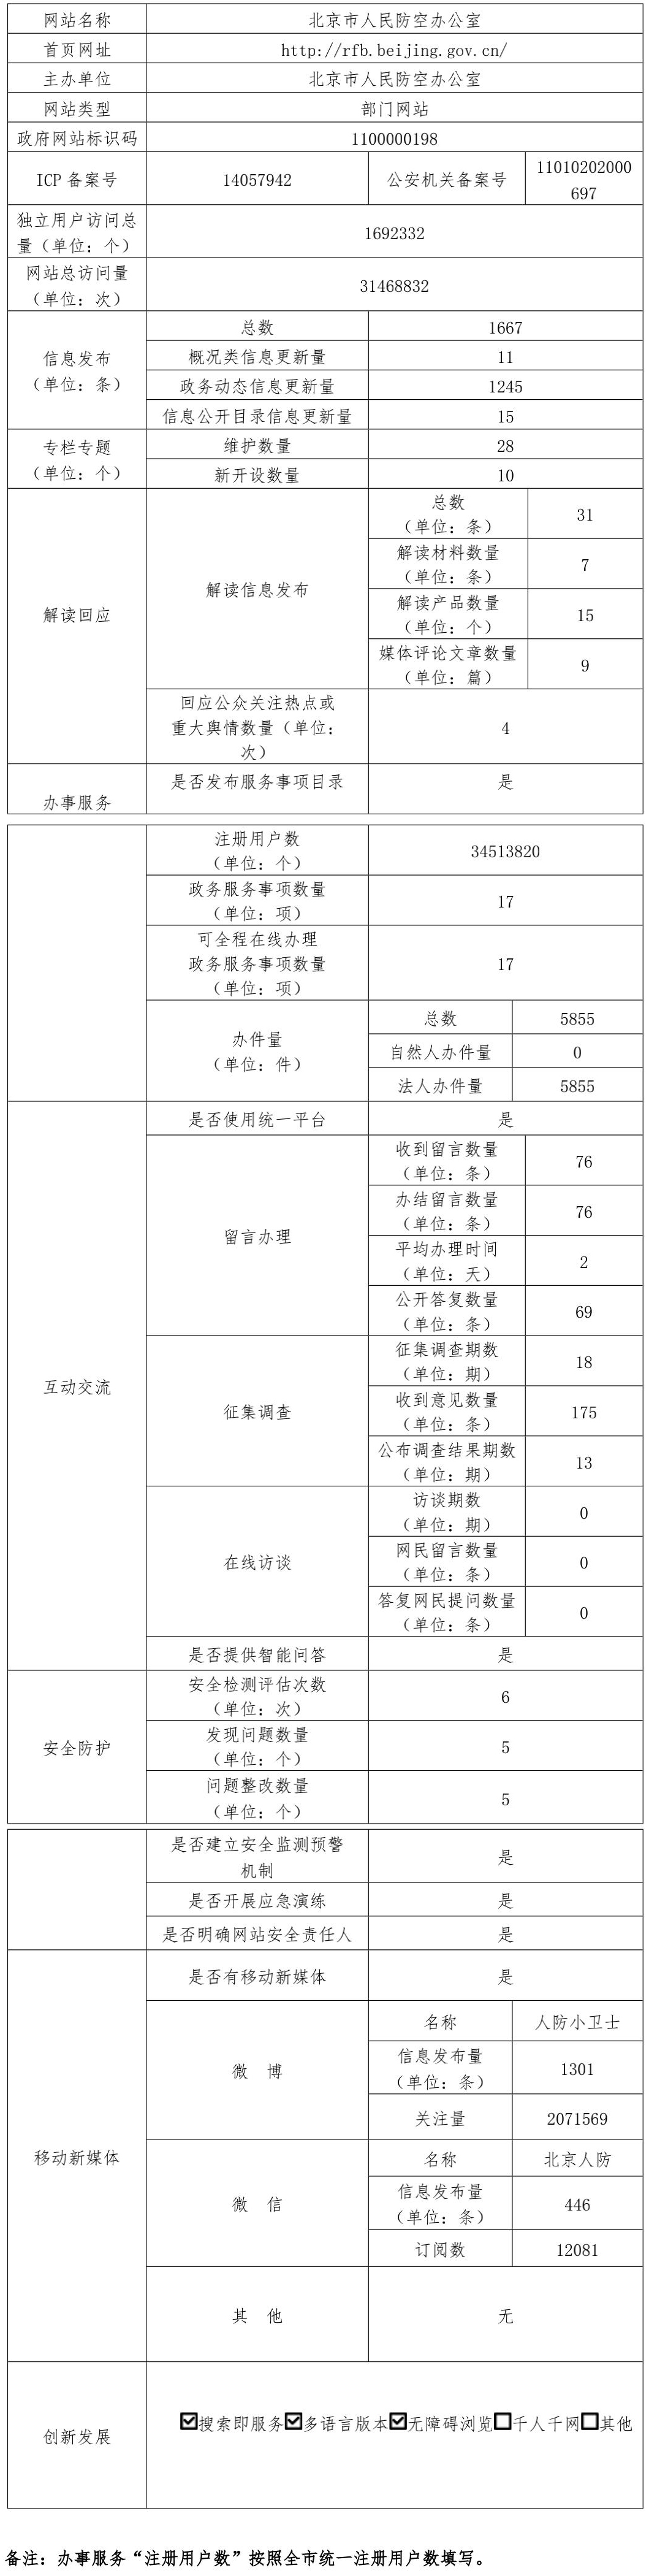 北京市人民防空办公室2021年政府网站年度工作报表